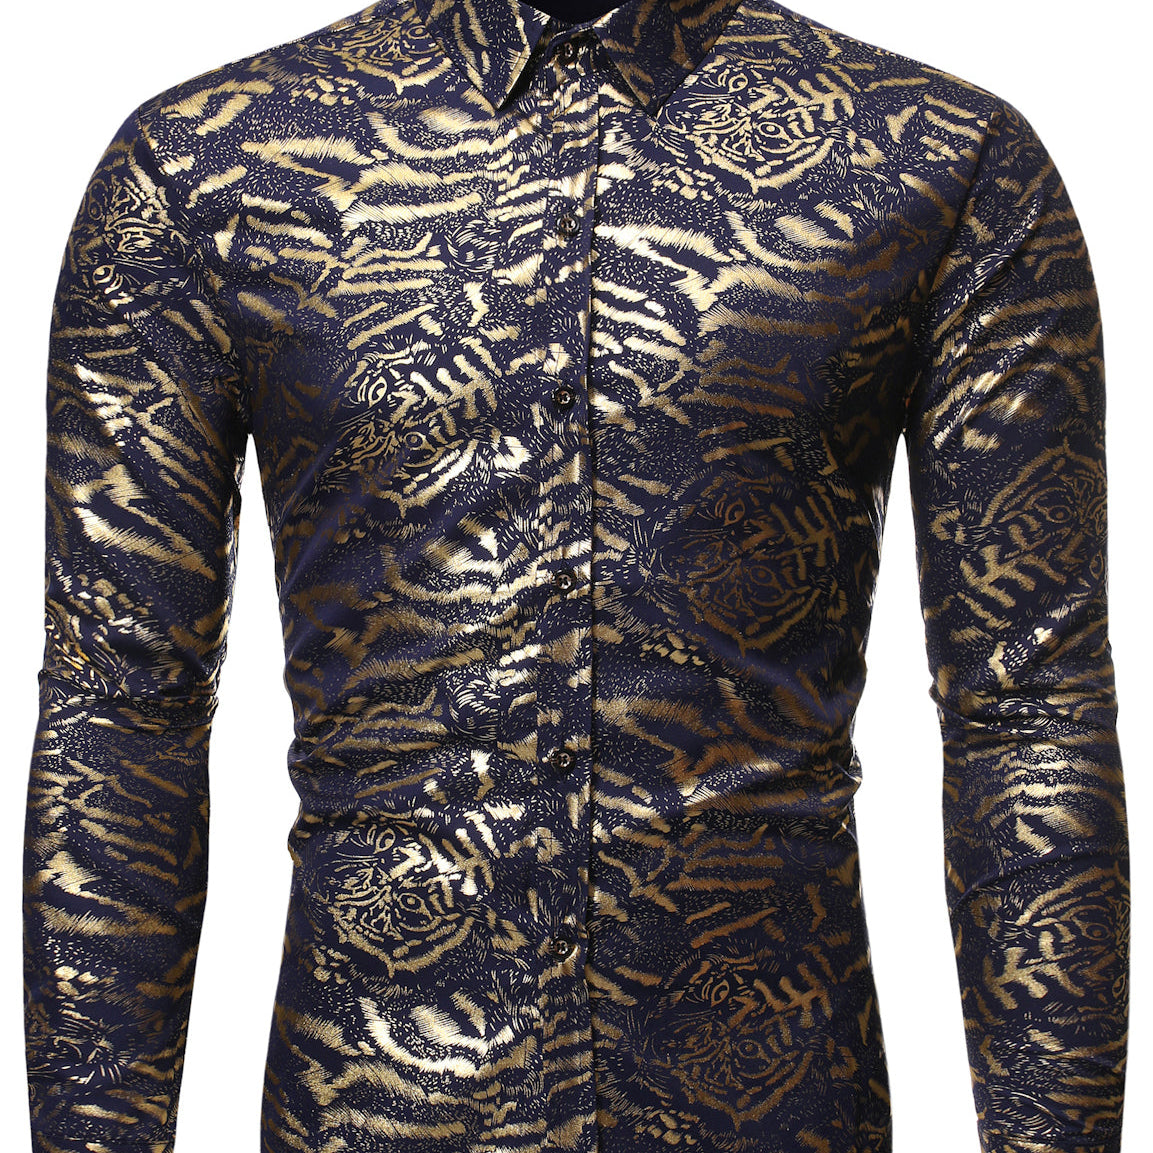 Chemise à manches longues pour hommes, imprimé tigre, boutonnée, Costume Cool, robe de soirée